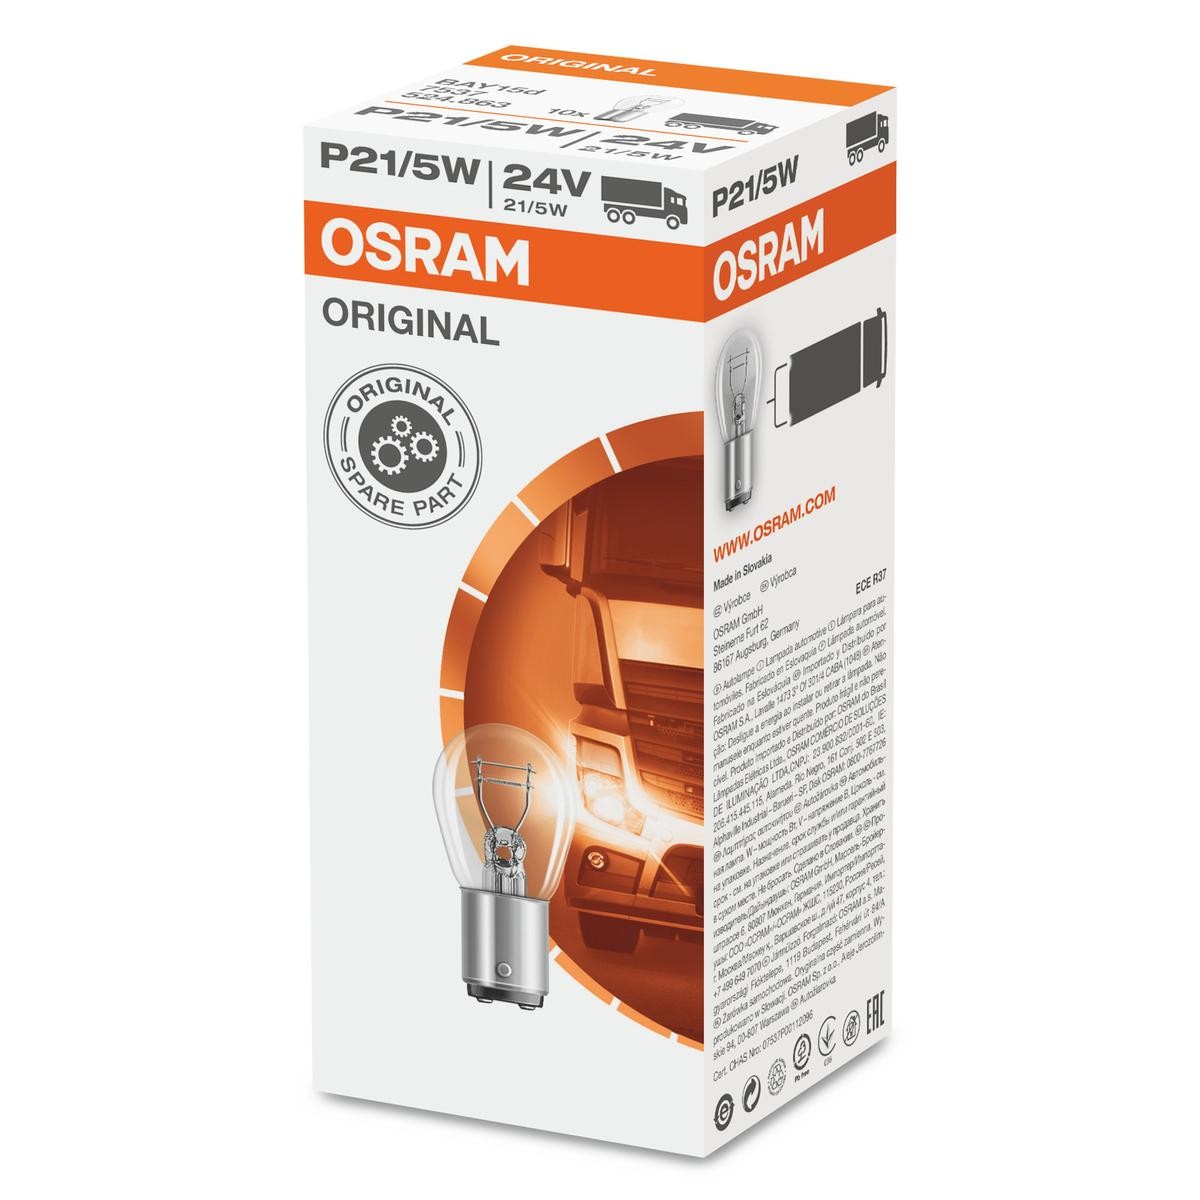 P21/5W OSRAM ORIGINAL LINE 24V 21/5W, P21/5W Bulb, indicator 7537 buy